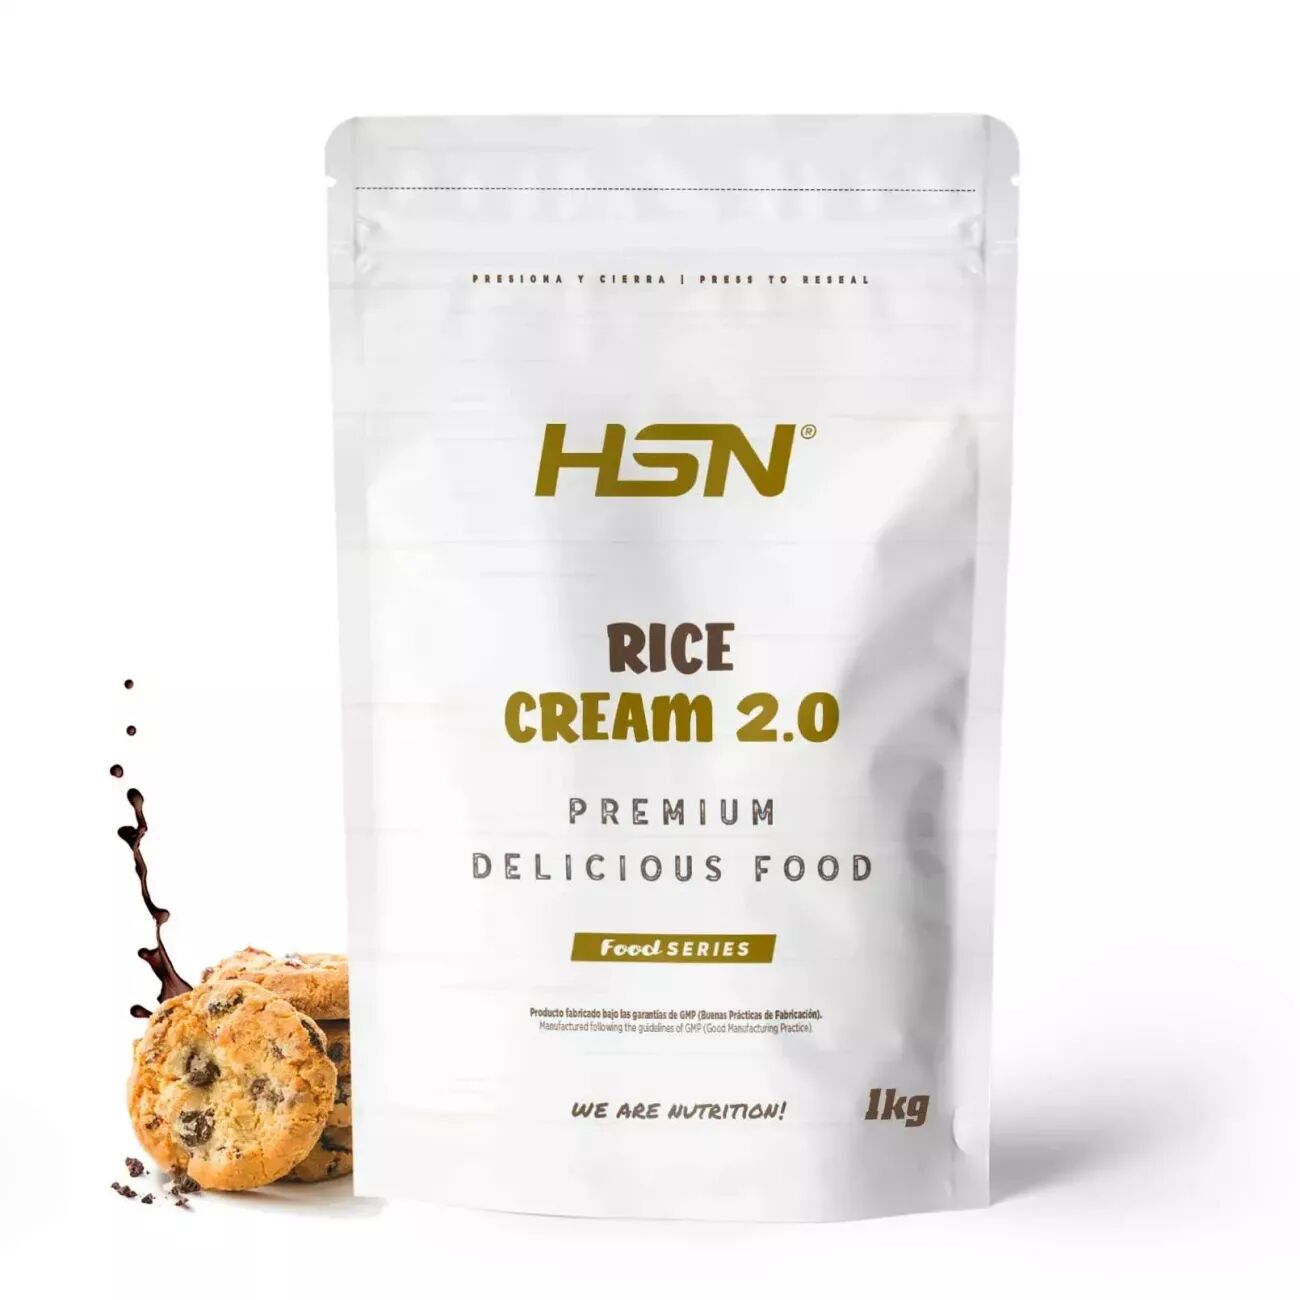 HSN Crema de arroz 2.0 1kg chocolate y galletas